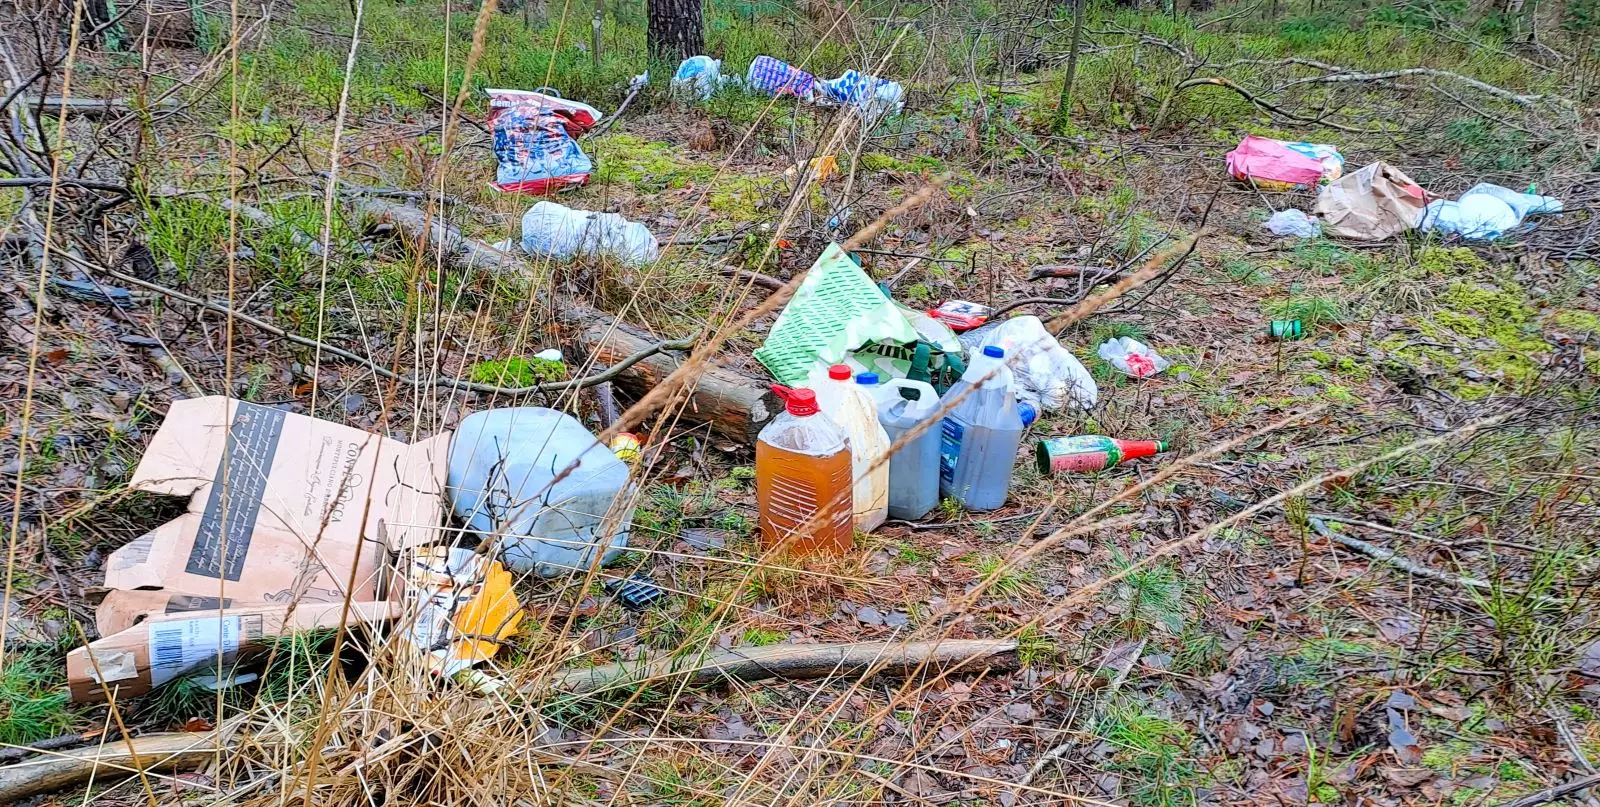 Gerd Rabe, Leiter der Revierförsterei Lohbergen im Forstamt Sellhorn, hat in seinem Revier zum wiederholten Male Müllablagerungen entdeckt. 